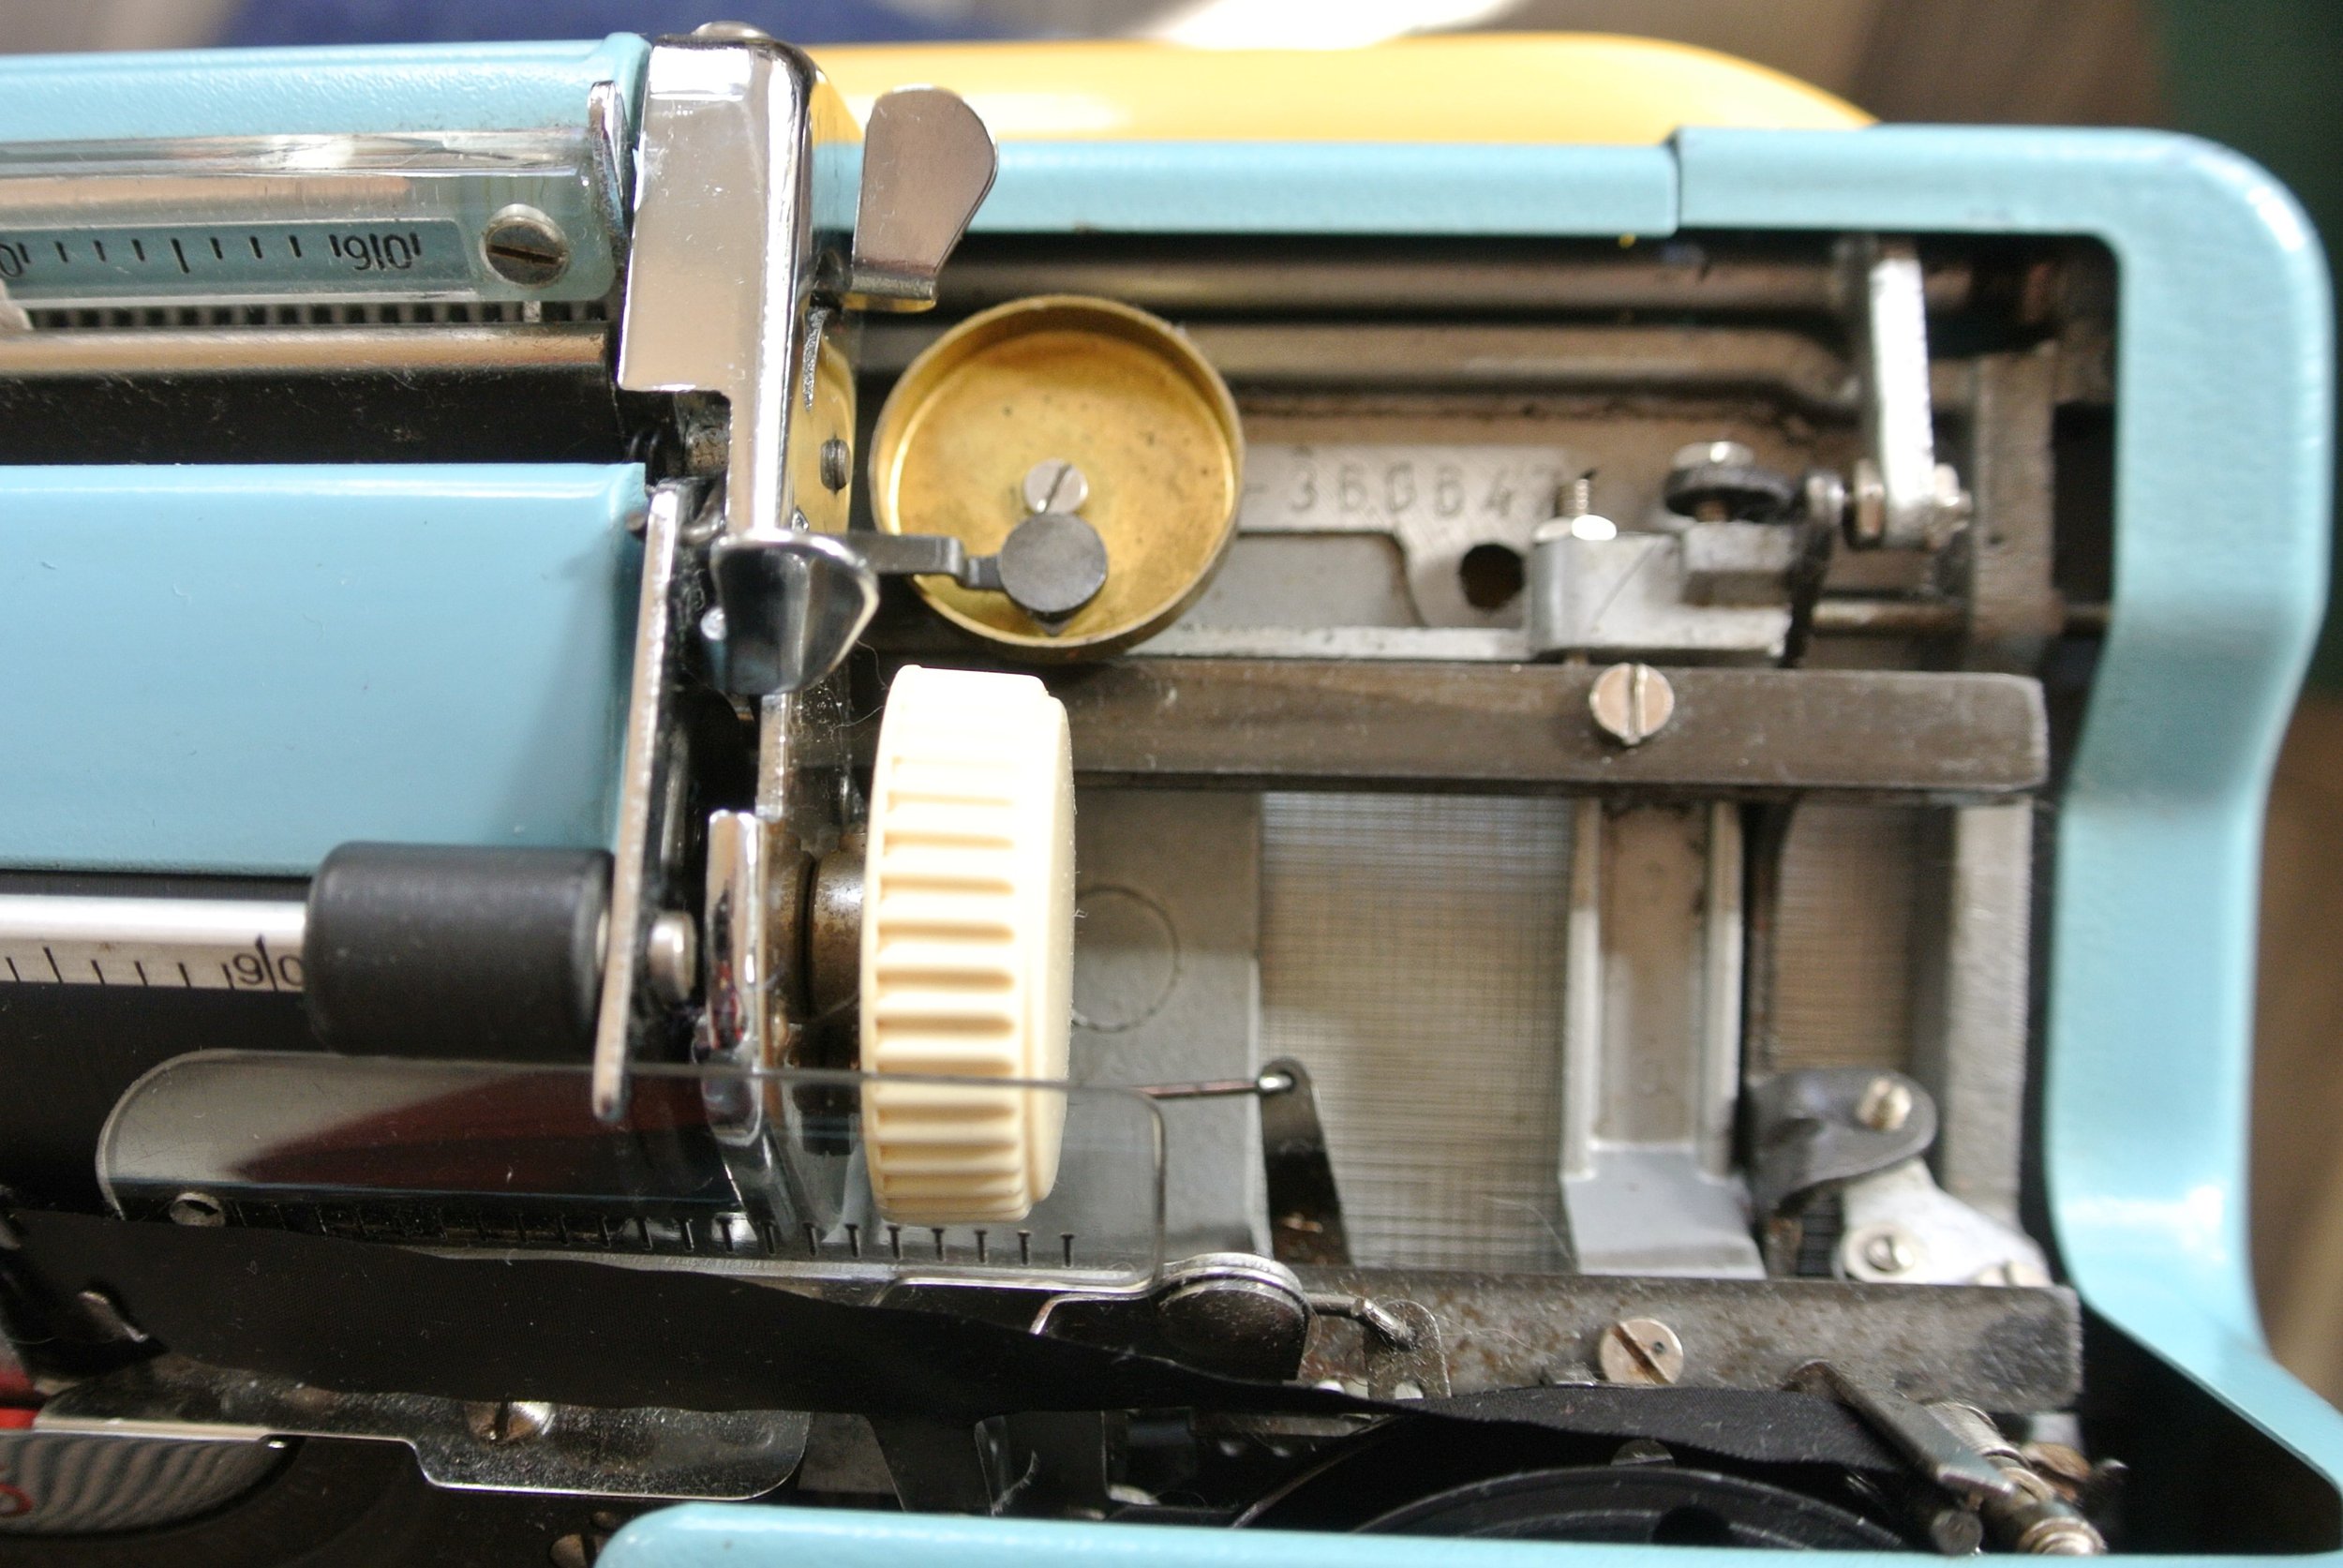 Olympia Typewriter Traveller de-luxe Splendid 33 66 99 Ribbon Twin Spool 1001fn 